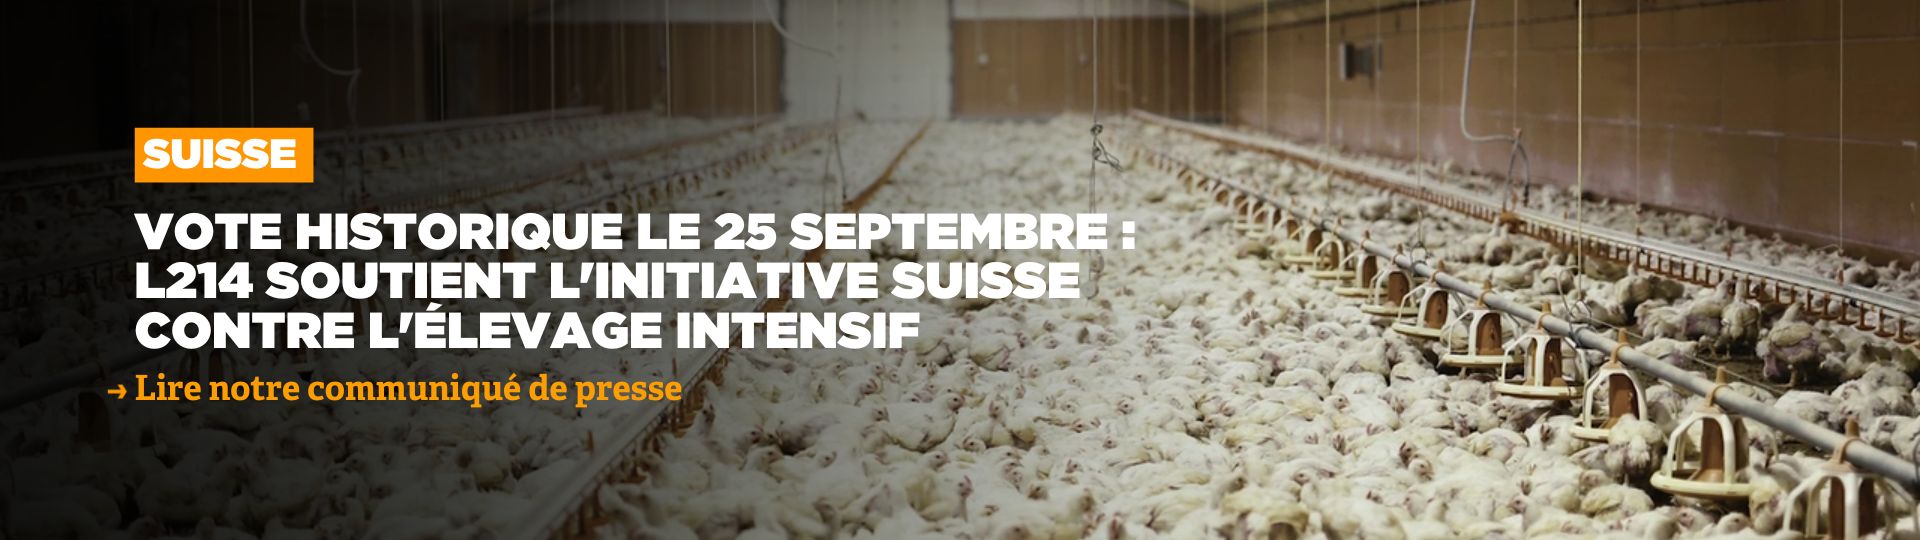 L214 soutient l'initiative suisse contre l'élevage intensif